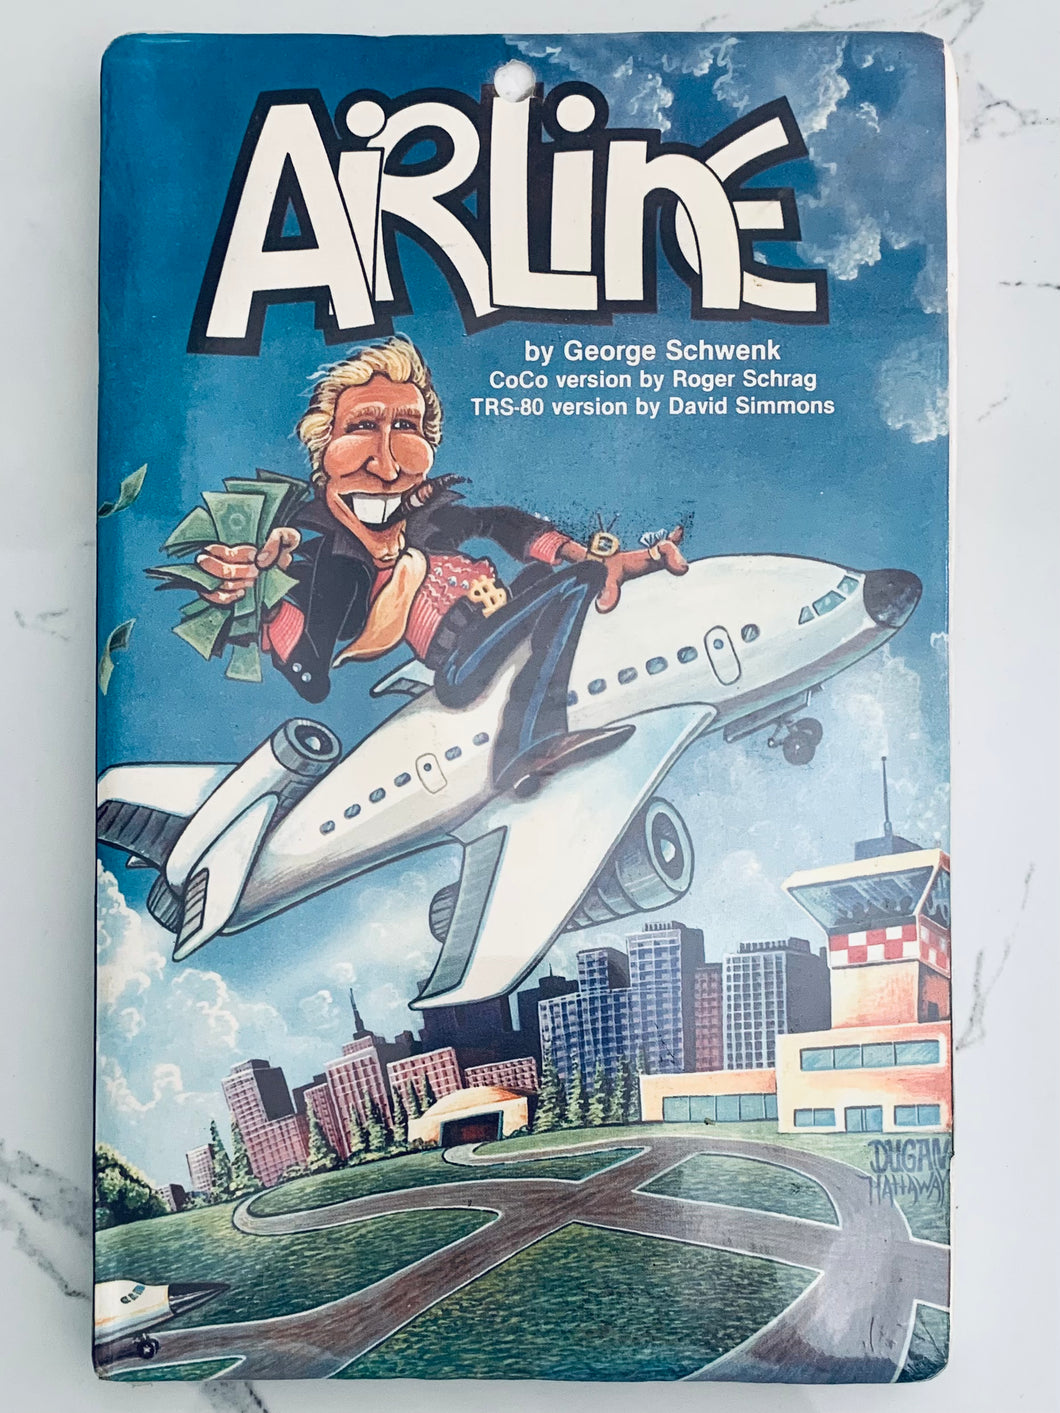 Airline - Commodore 64 C64 - Diskette - NTSC - CIB